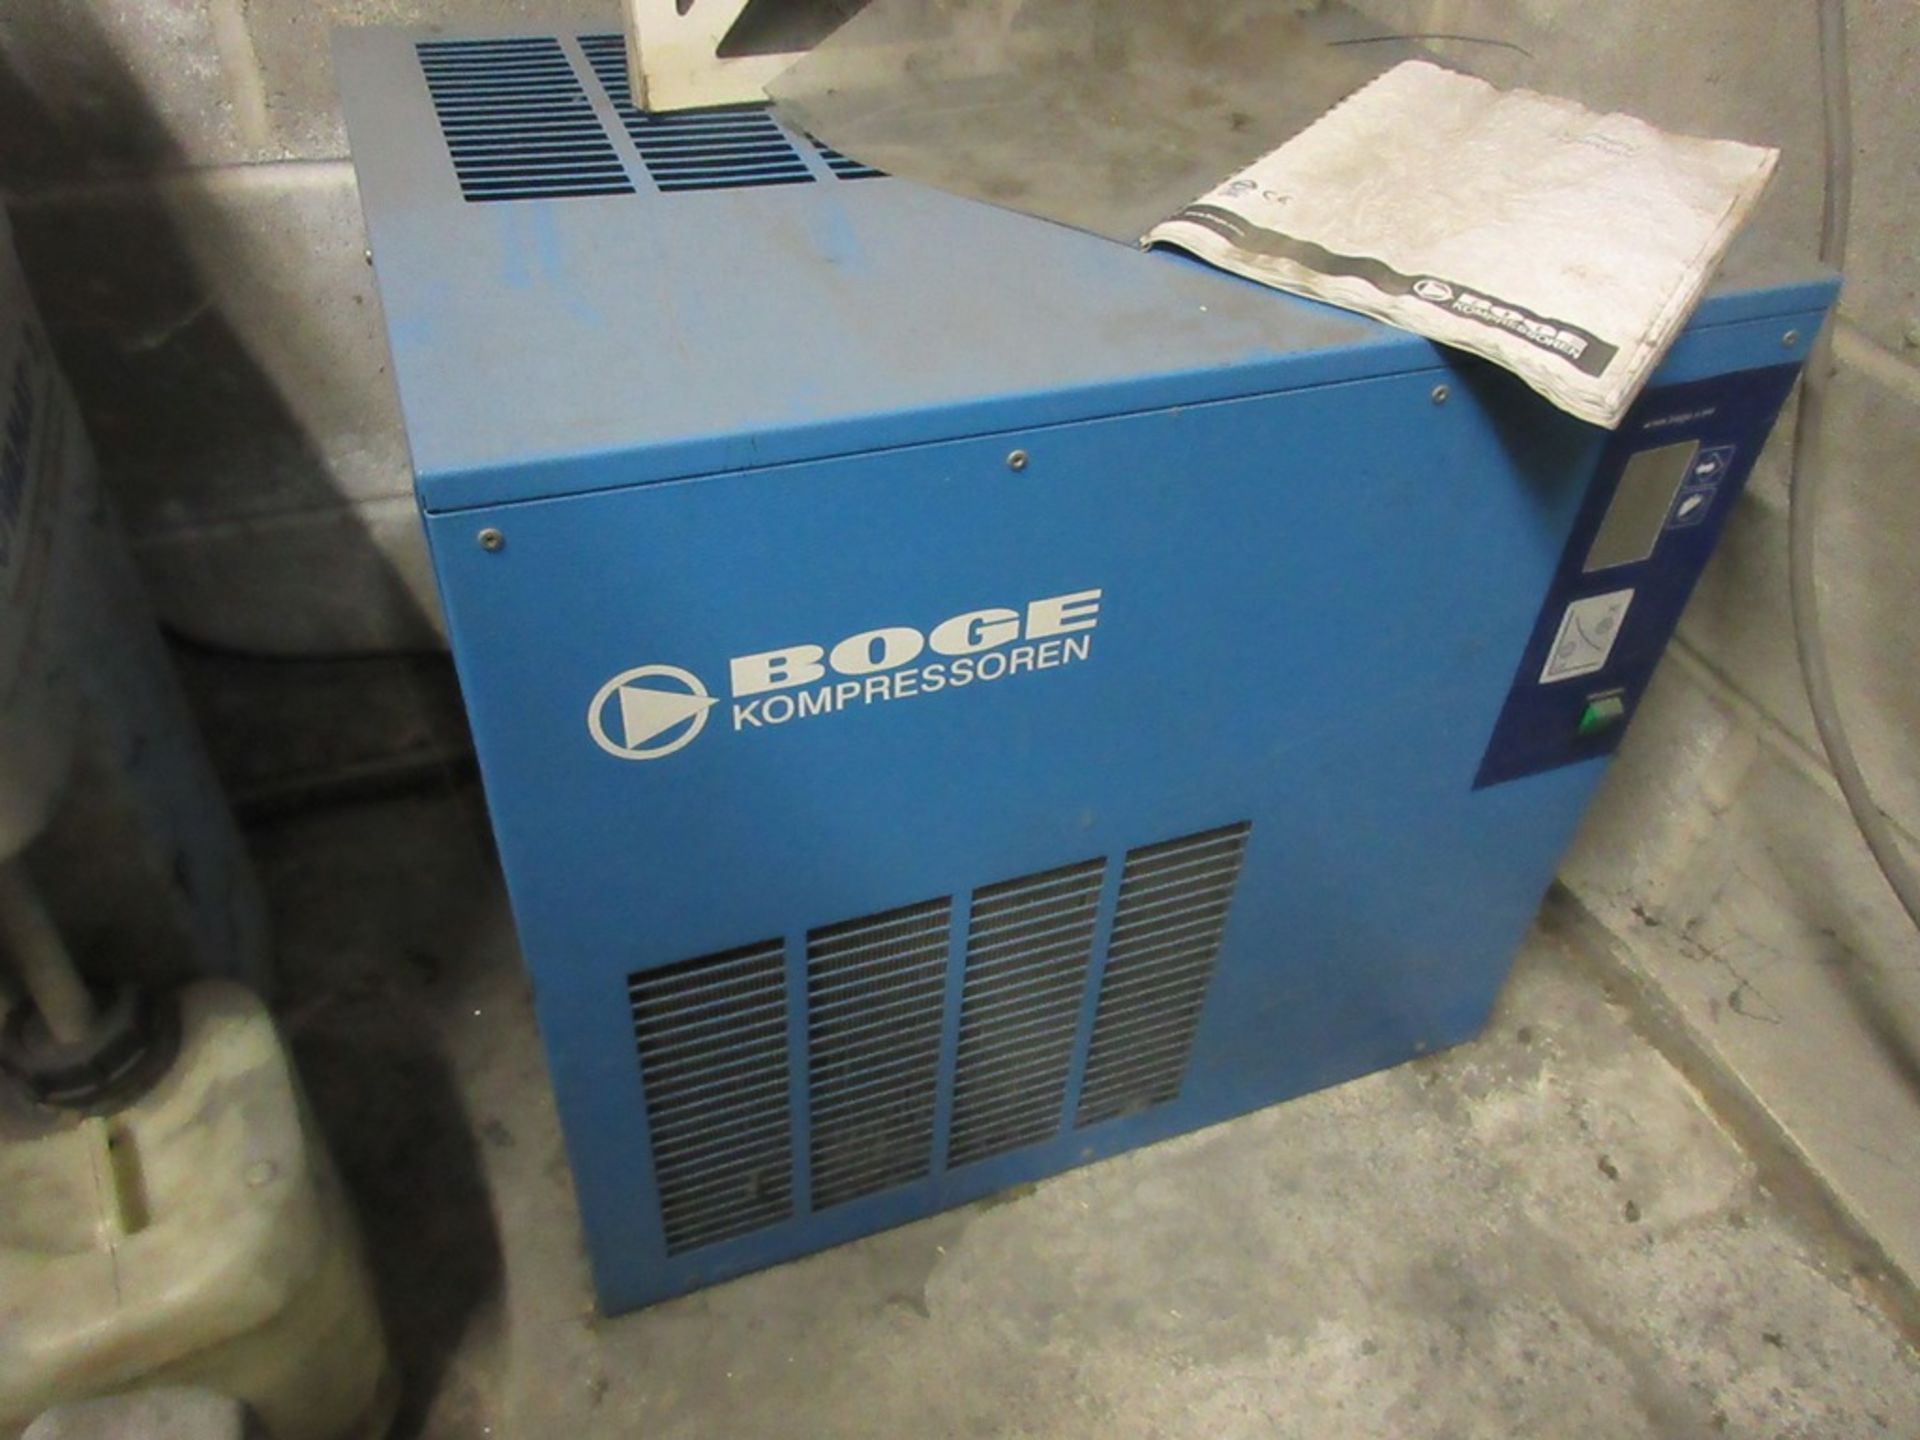 Boge Kompressor SD15 Packaged air compressor (1999) - Image 7 of 10